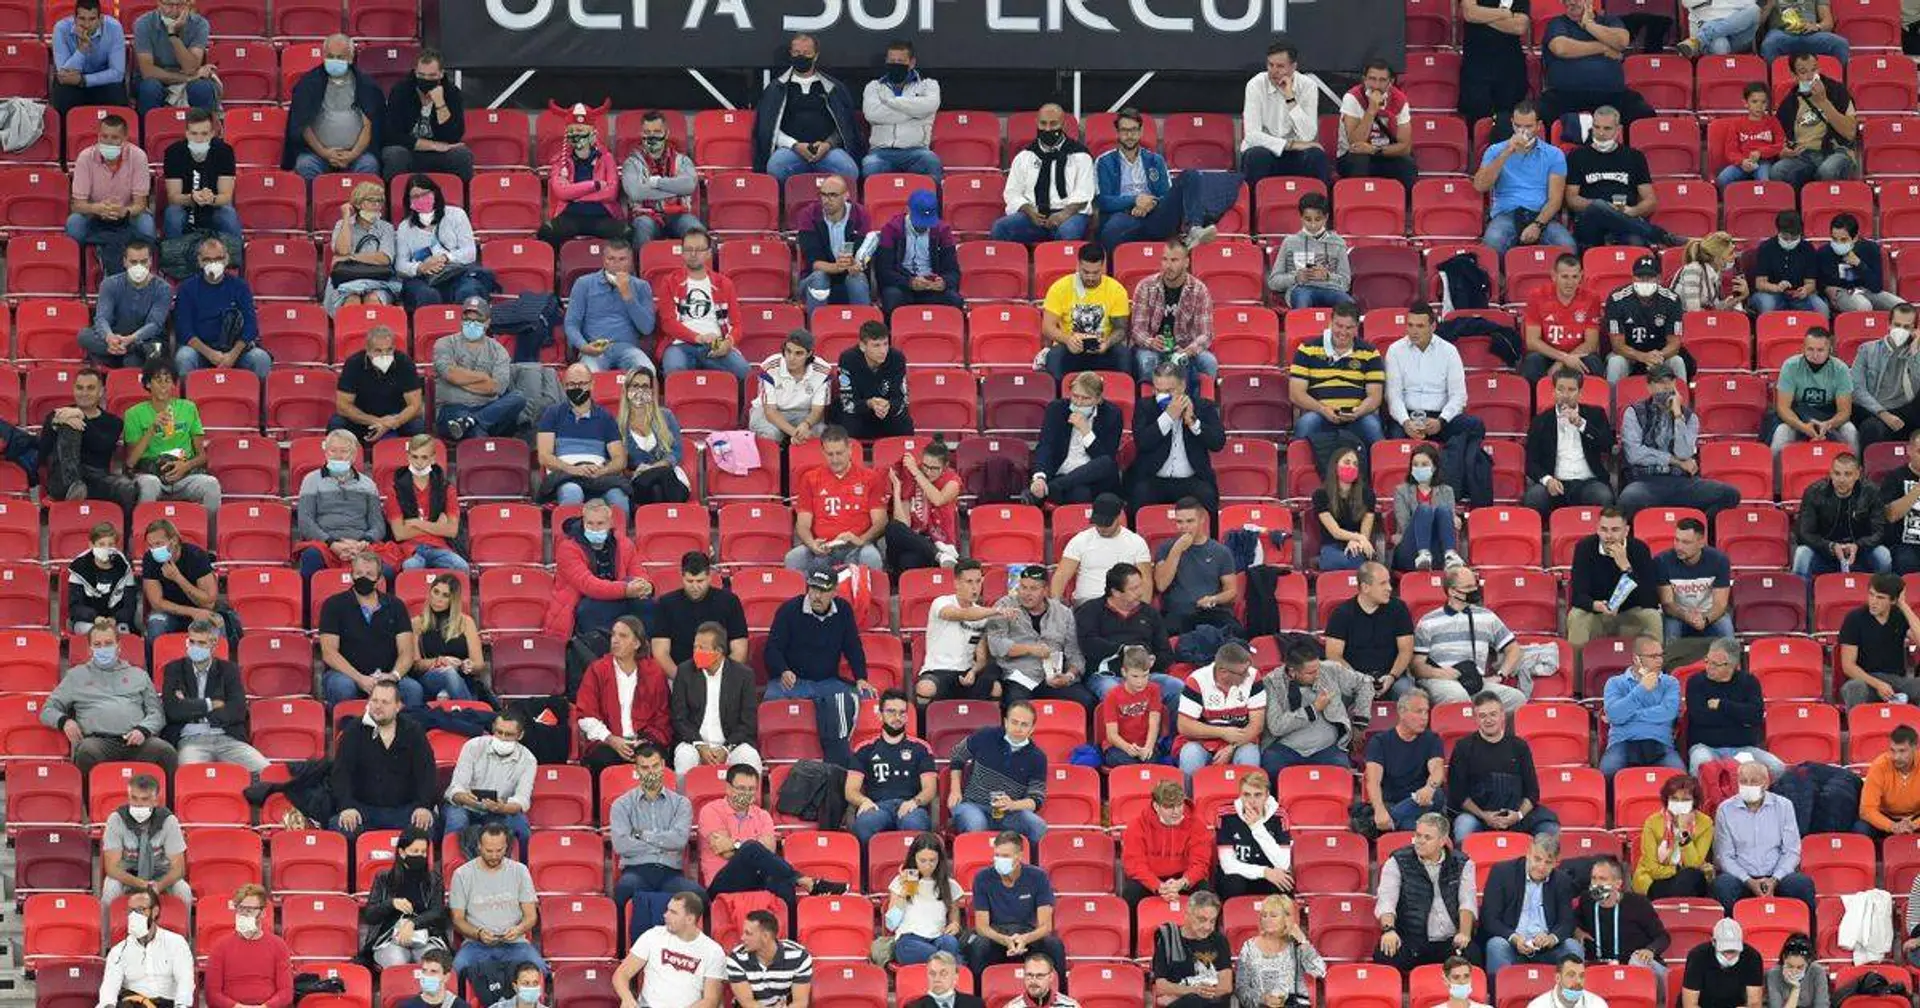 "Echte Fußball-Atmosphäre": Die UEFA ist zufrieden mit der Austragung des Supercups mit Fans